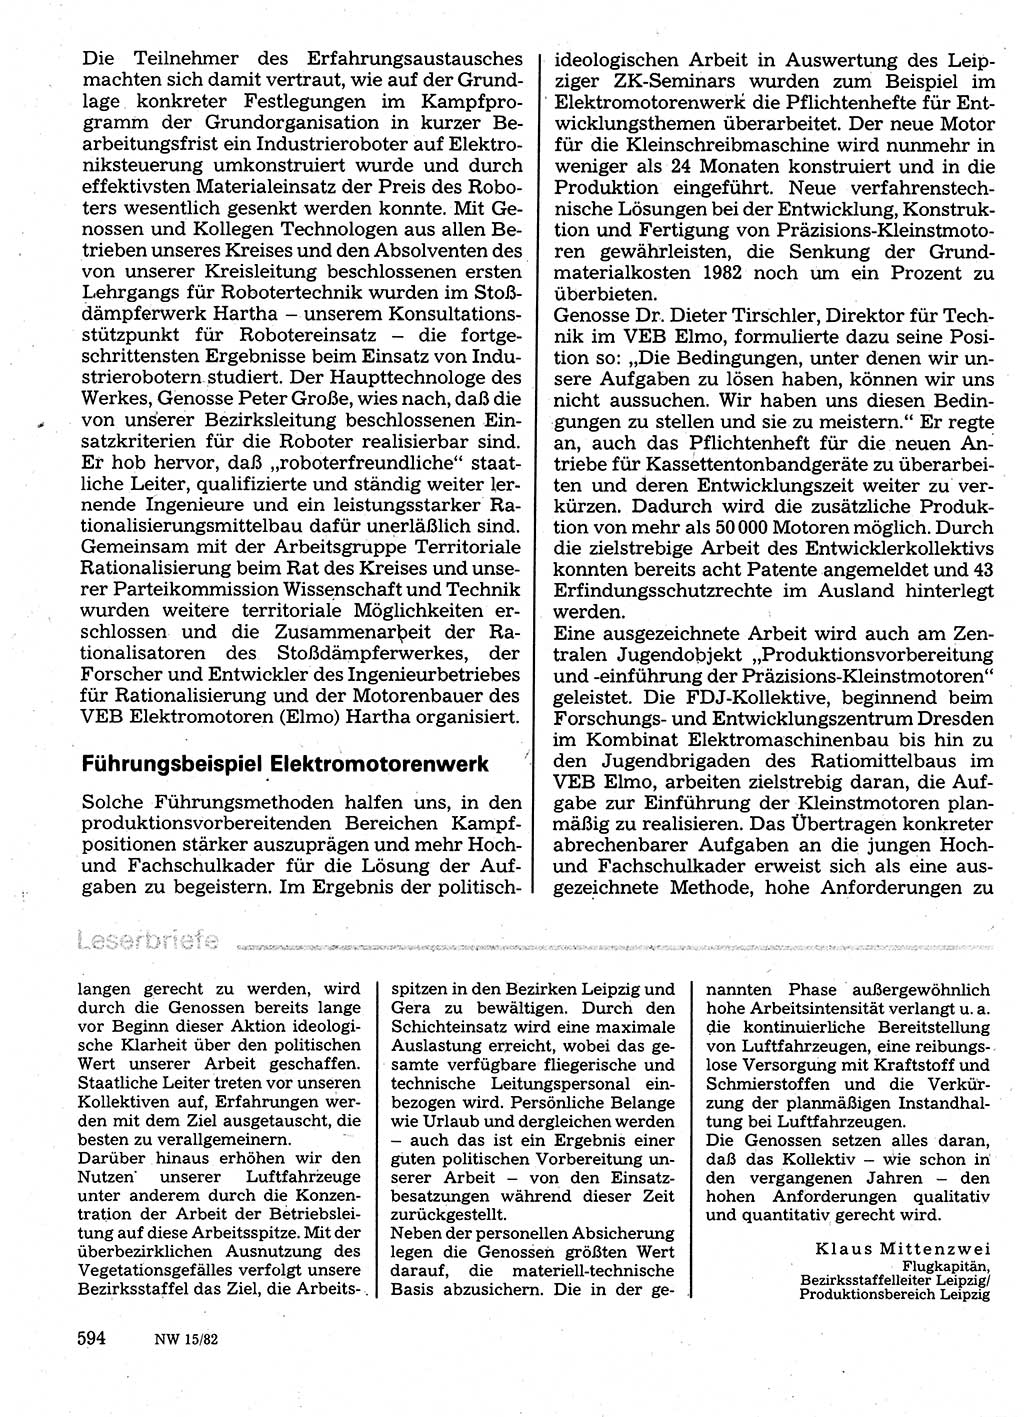 Neuer Weg (NW), Organ des Zentralkomitees (ZK) der SED (Sozialistische Einheitspartei Deutschlands) für Fragen des Parteilebens, 37. Jahrgang [Deutsche Demokratische Republik (DDR)] 1982, Seite 594 (NW ZK SED DDR 1982, S. 594)